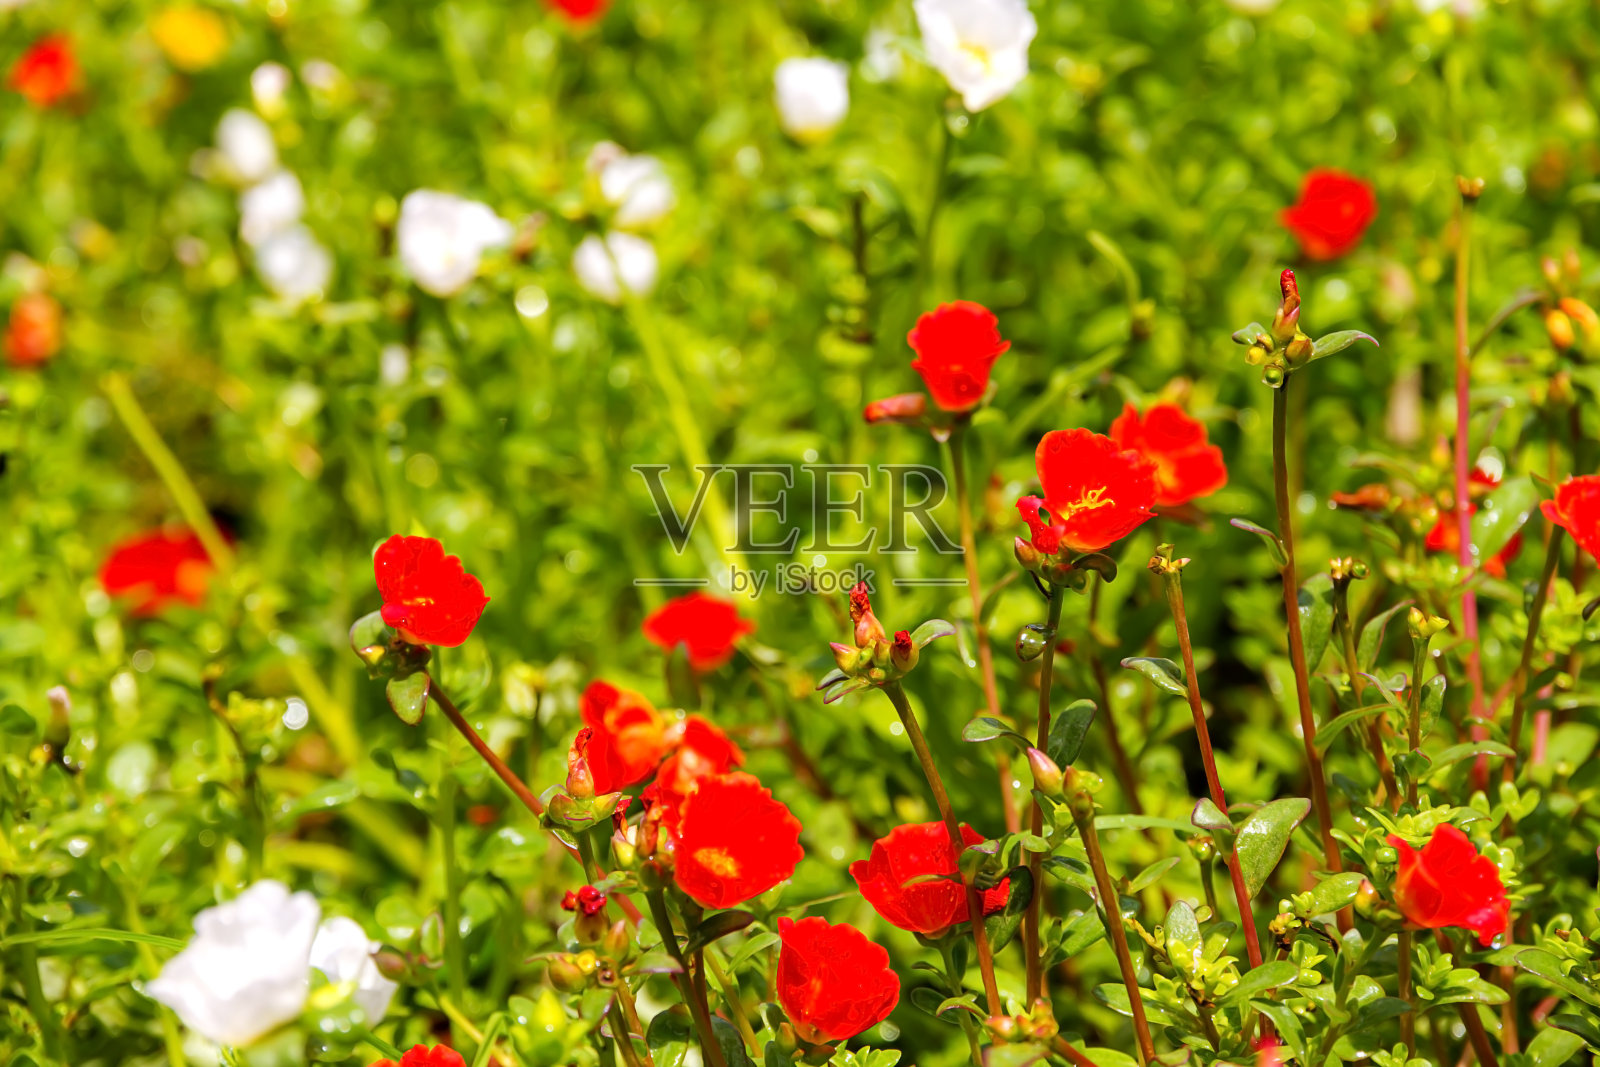 马齿苋的花具有红白相间的美丽照片摄影图片